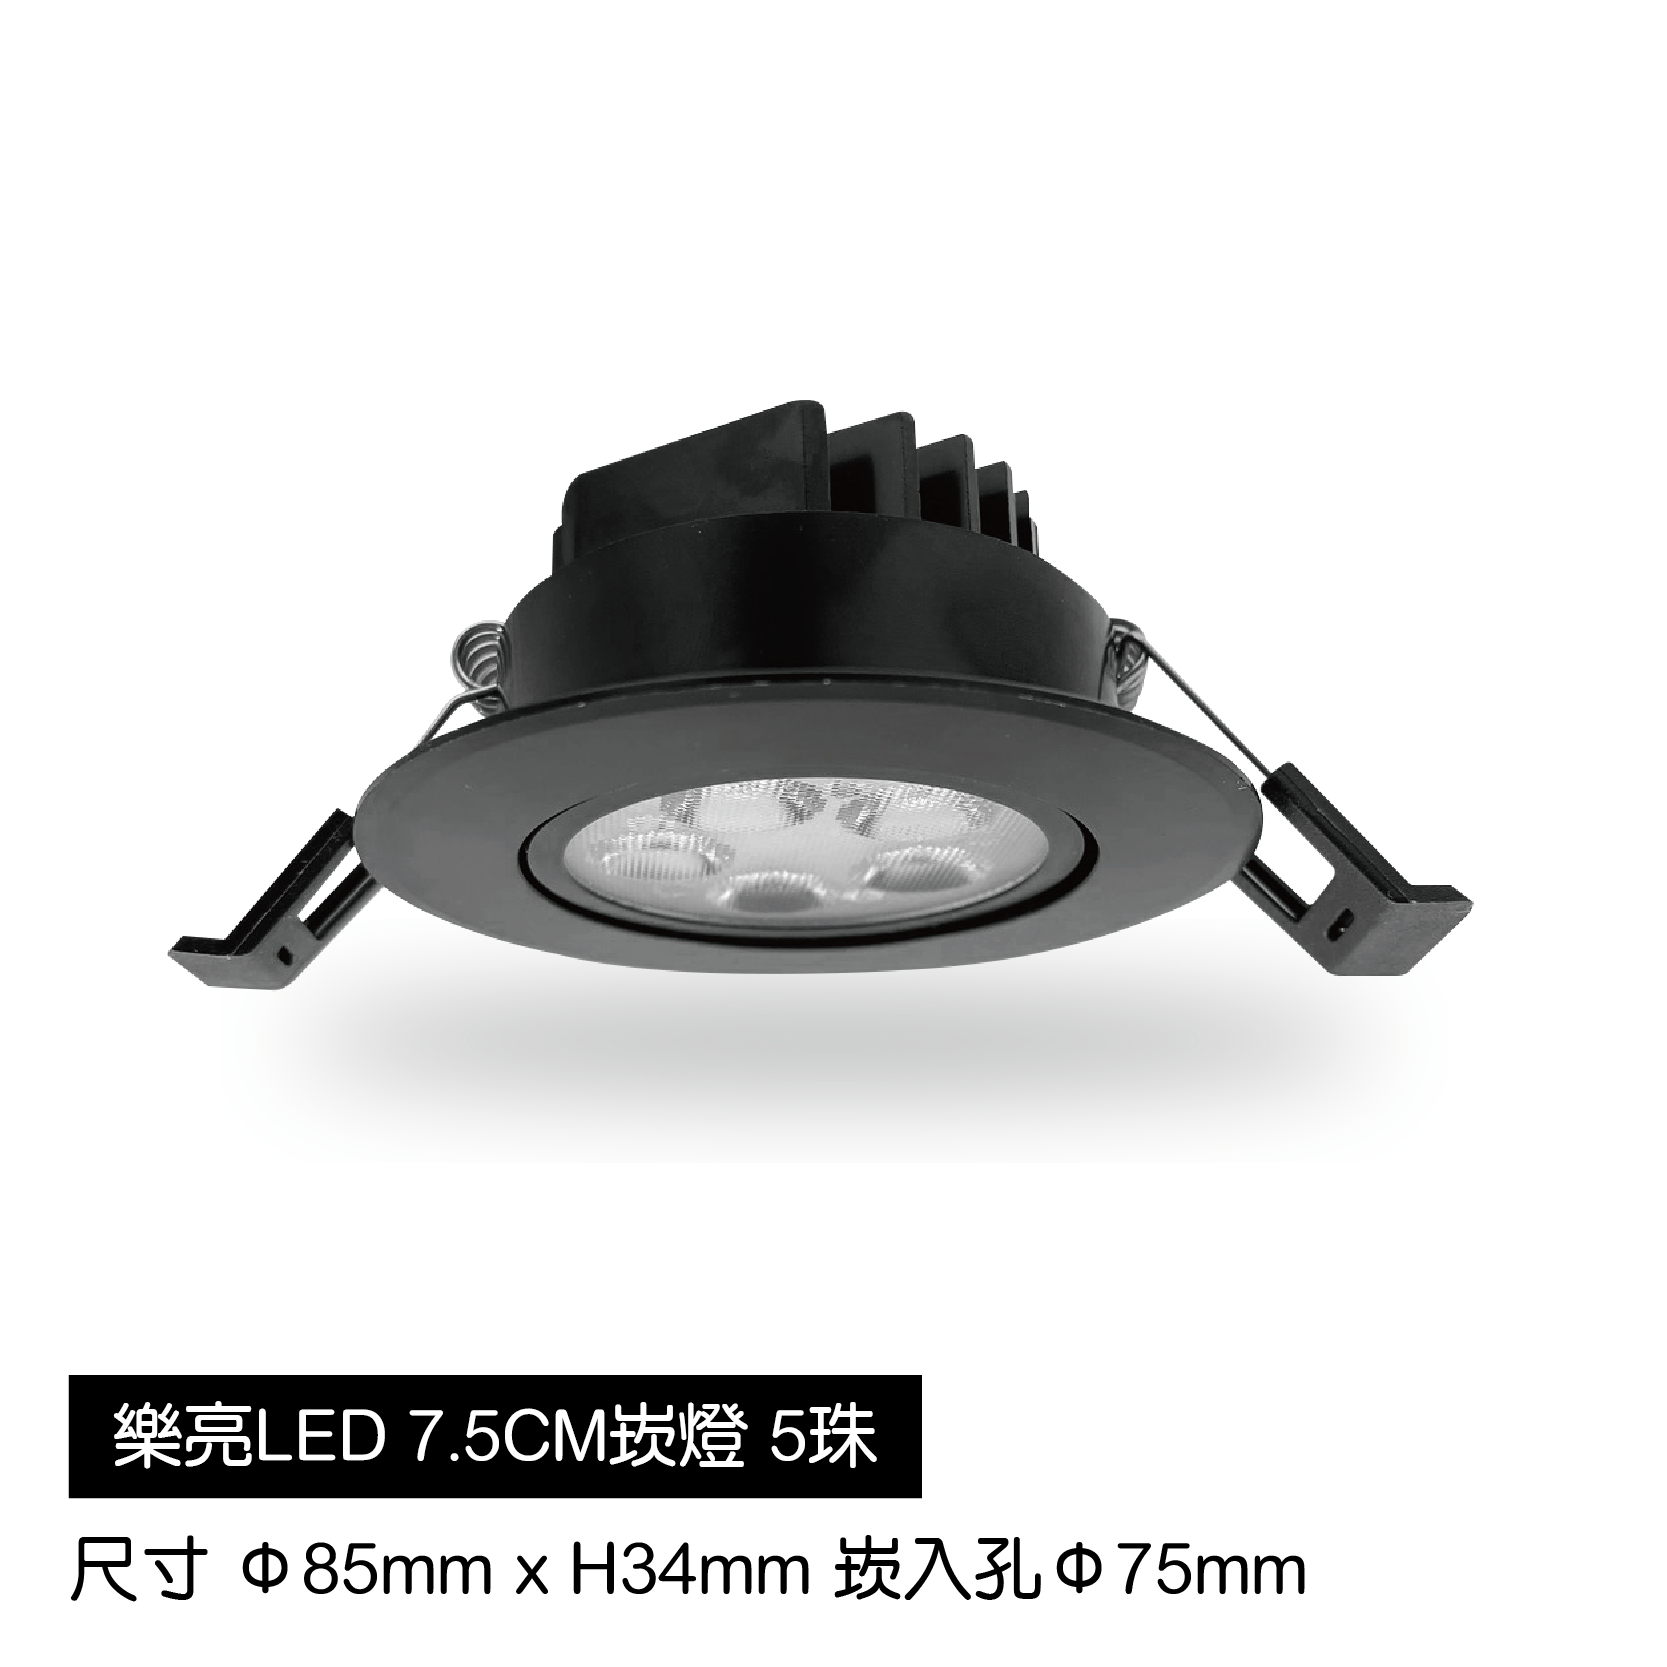 LED蜂巢7.5cm崁燈-5珠-黑殼